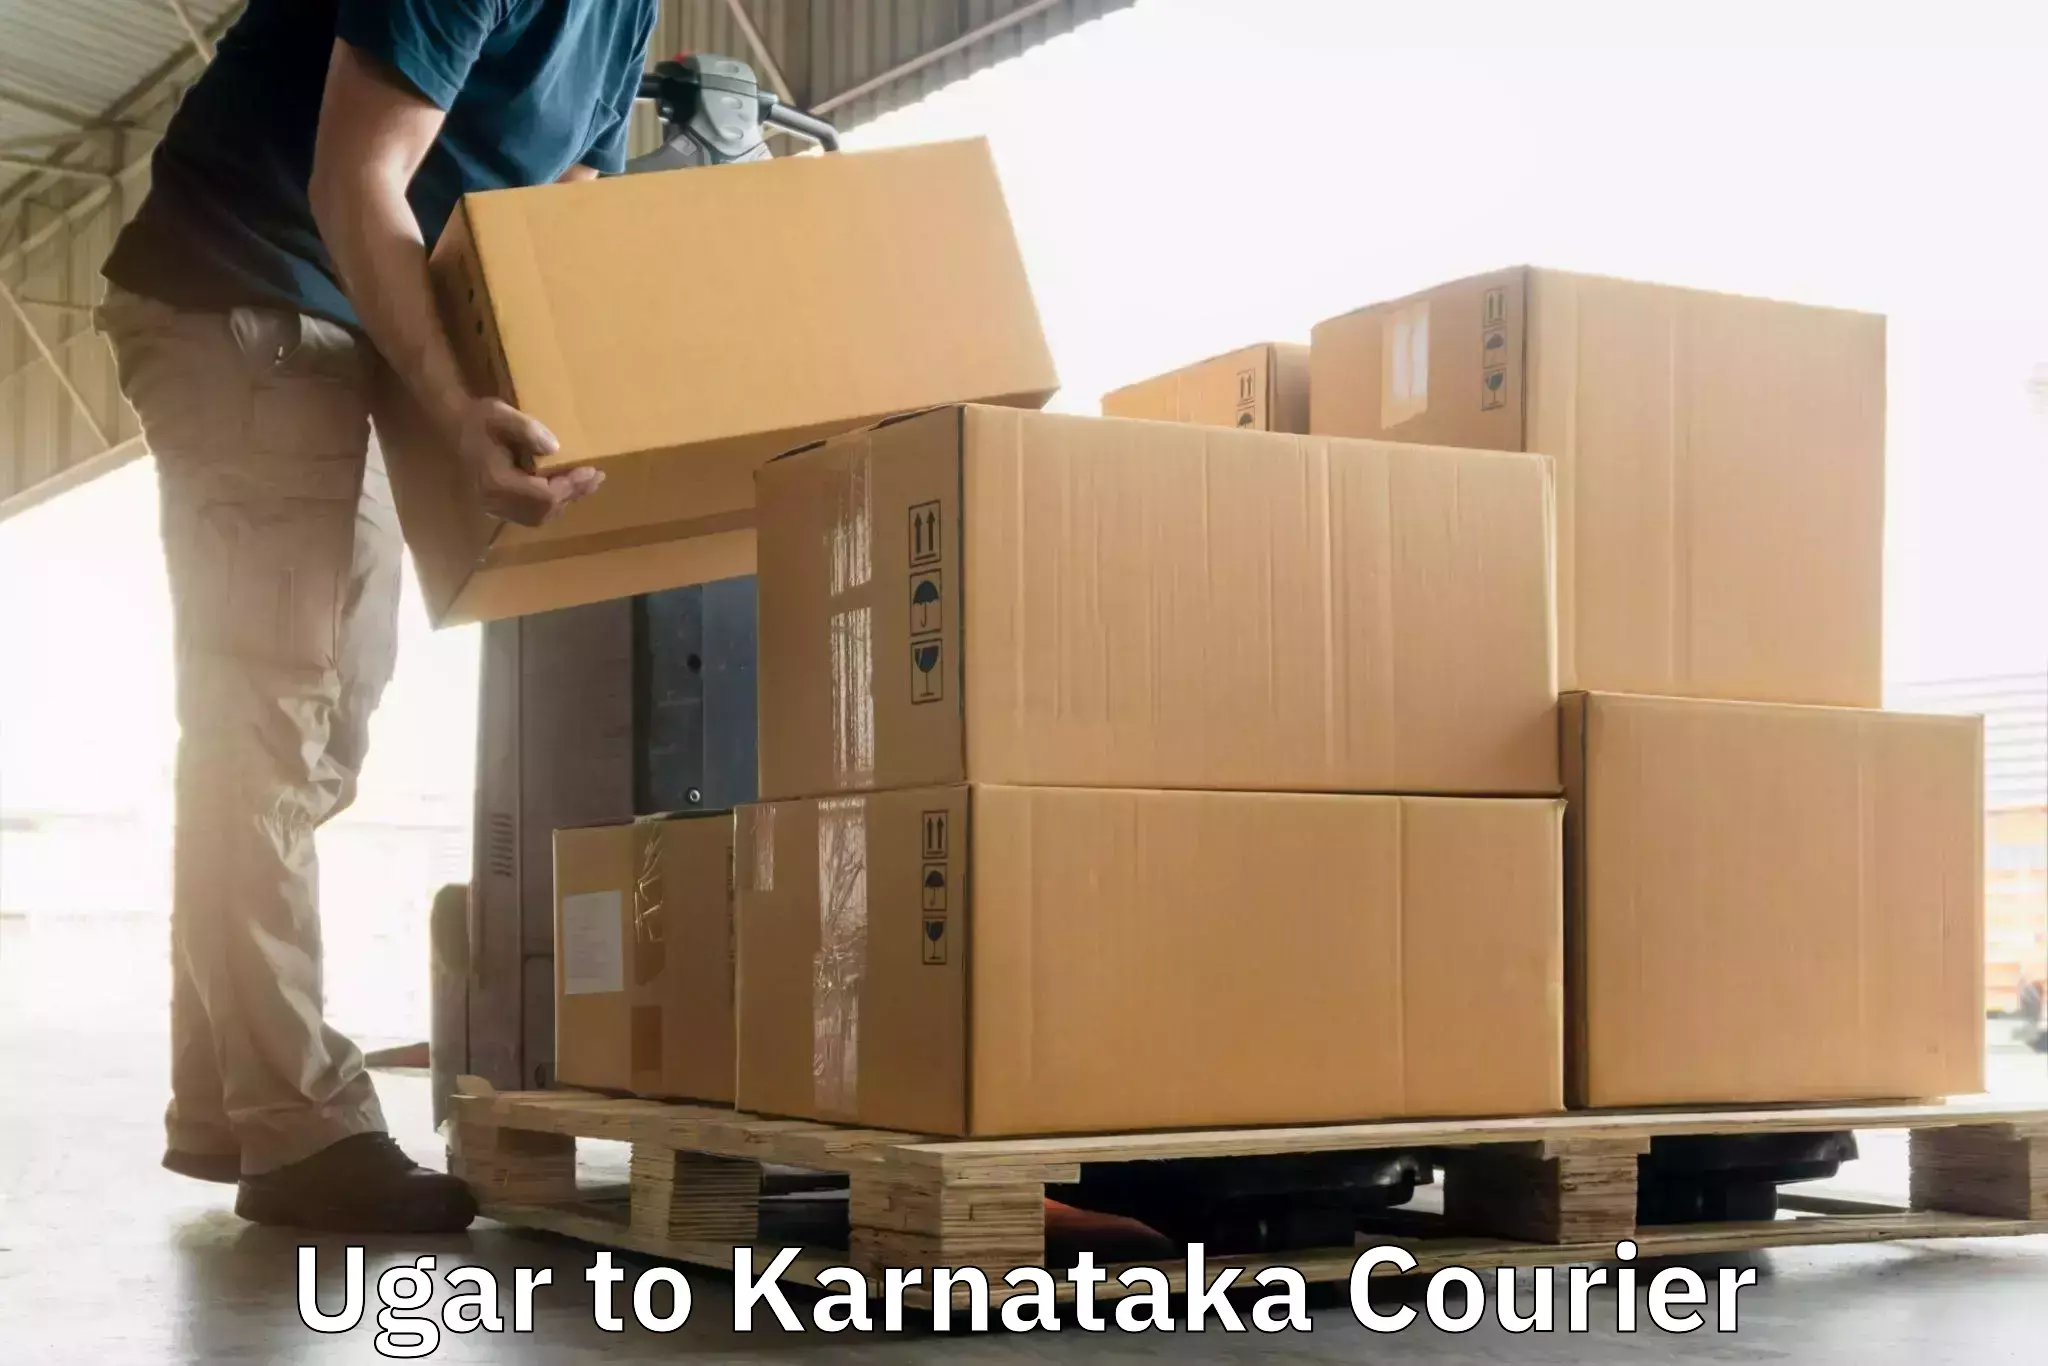 High-speed parcel service Ugar to Karnataka